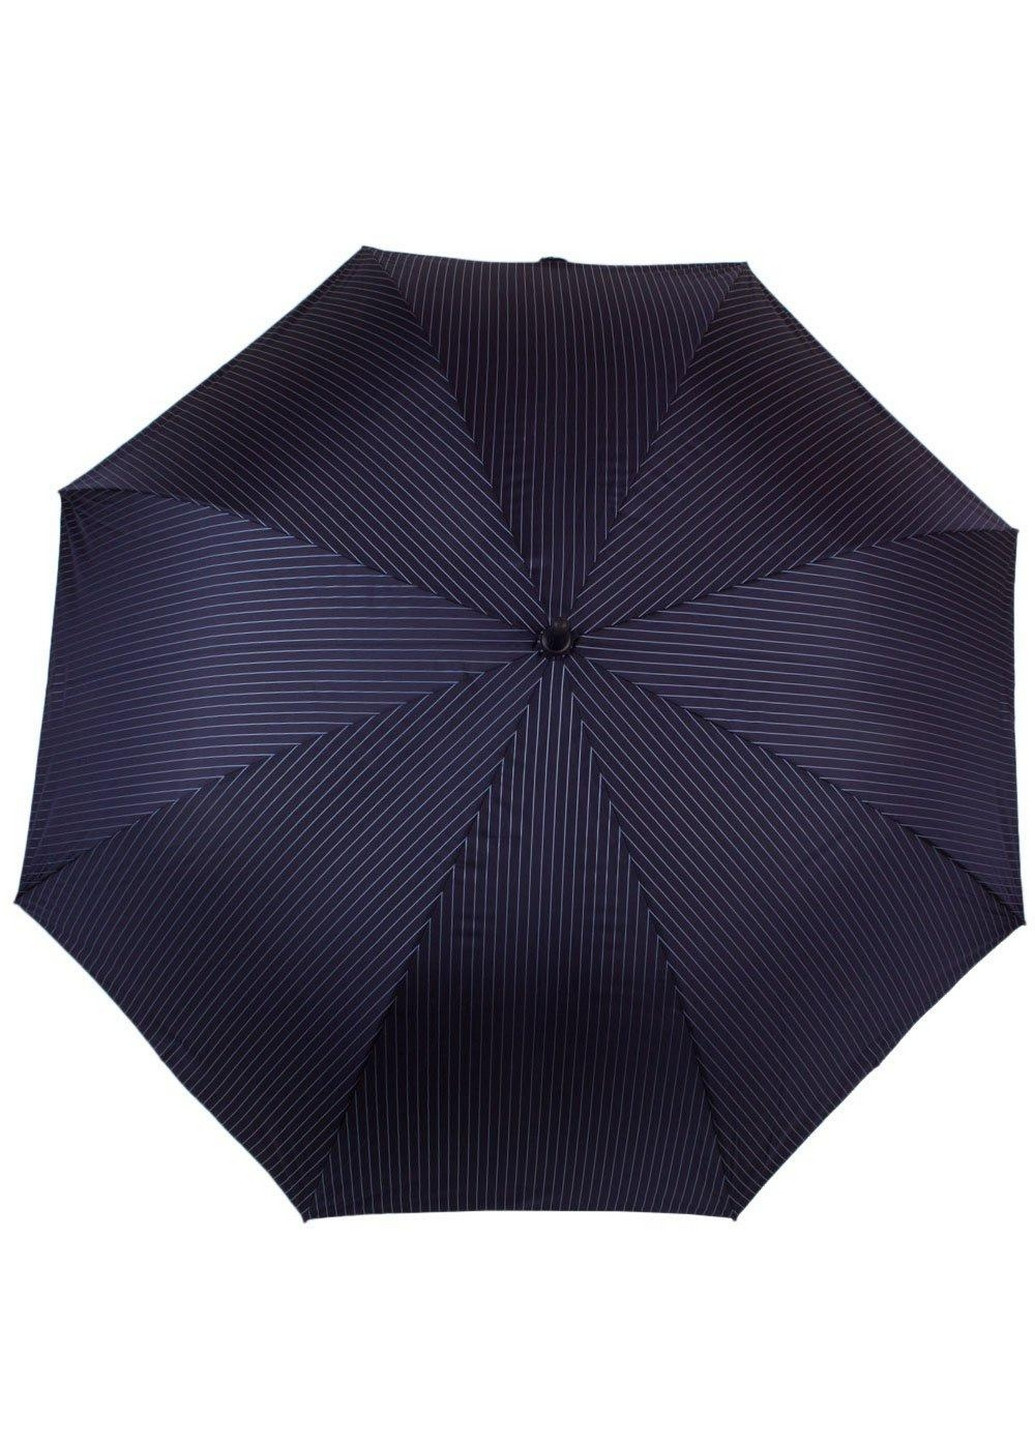 Зонт-трость мужской полуавтомат 117 см Fulton (260285585)